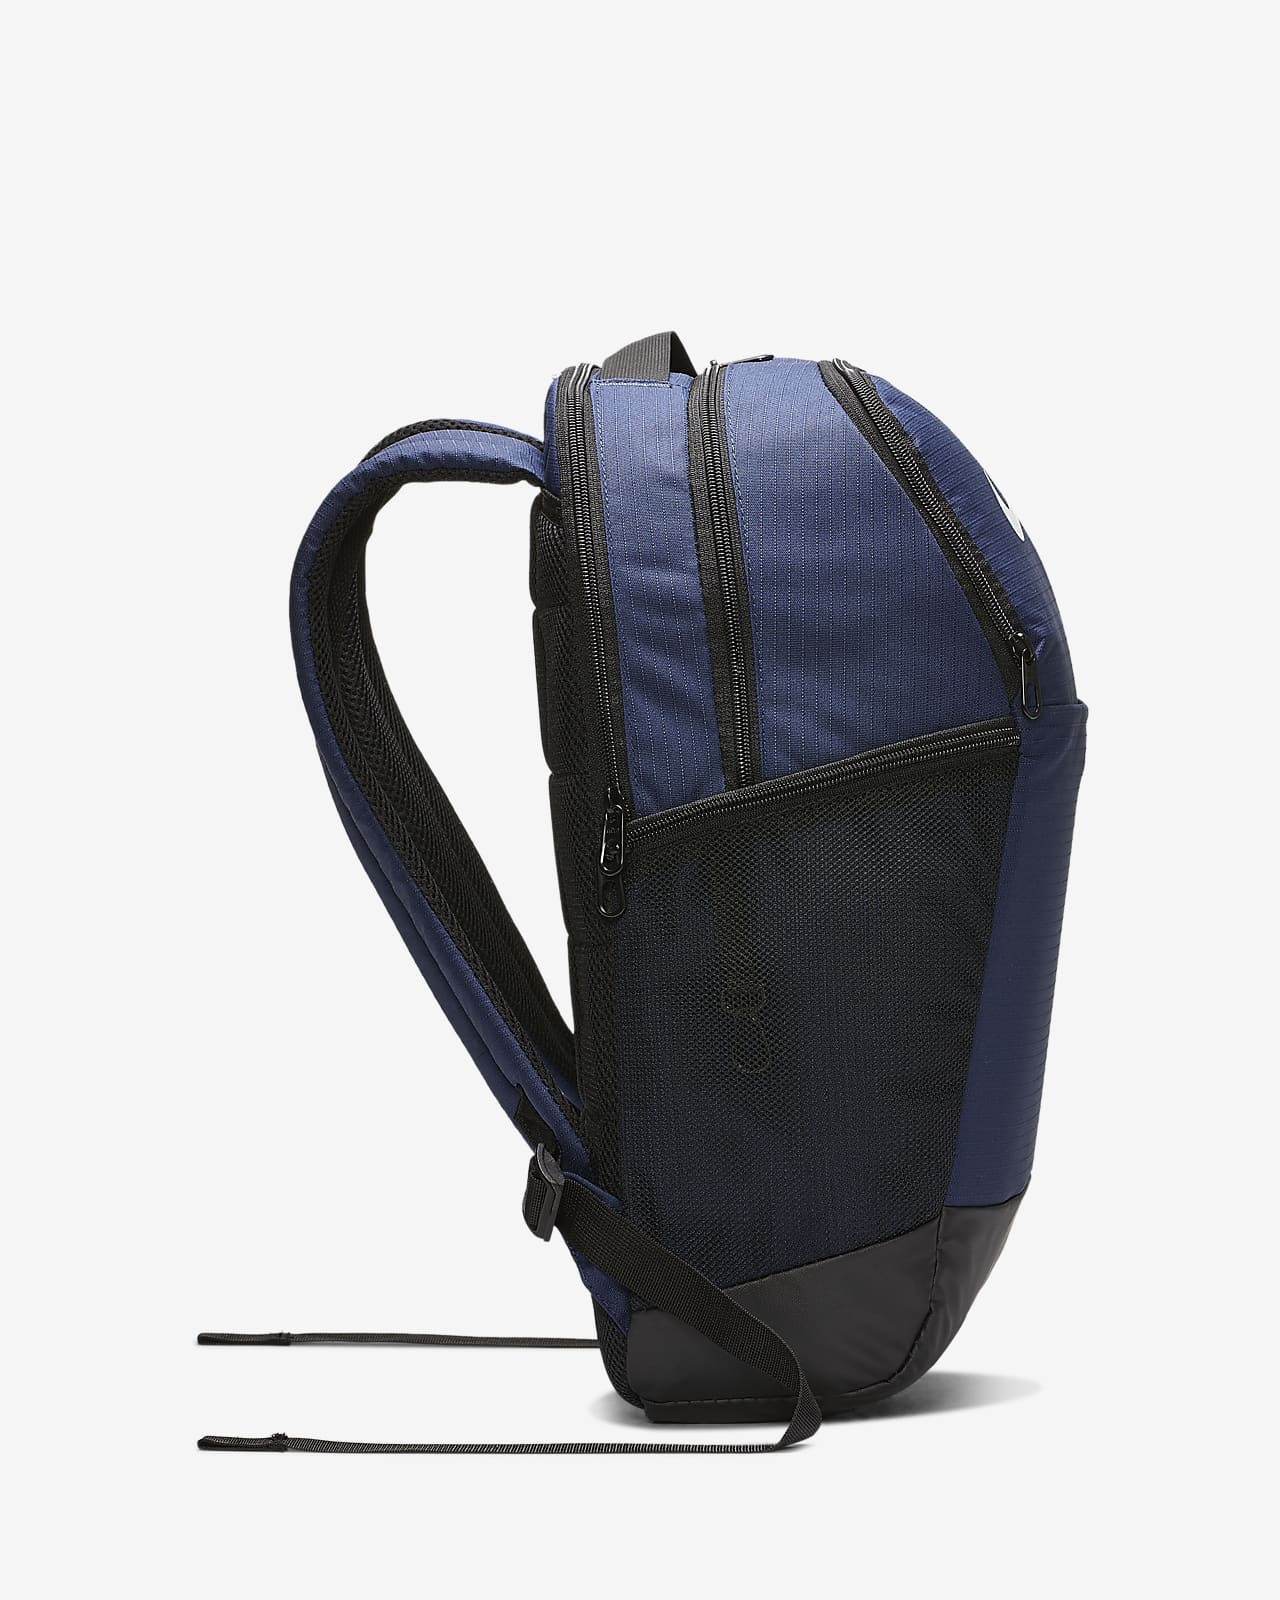 nike brasilia blue backpack